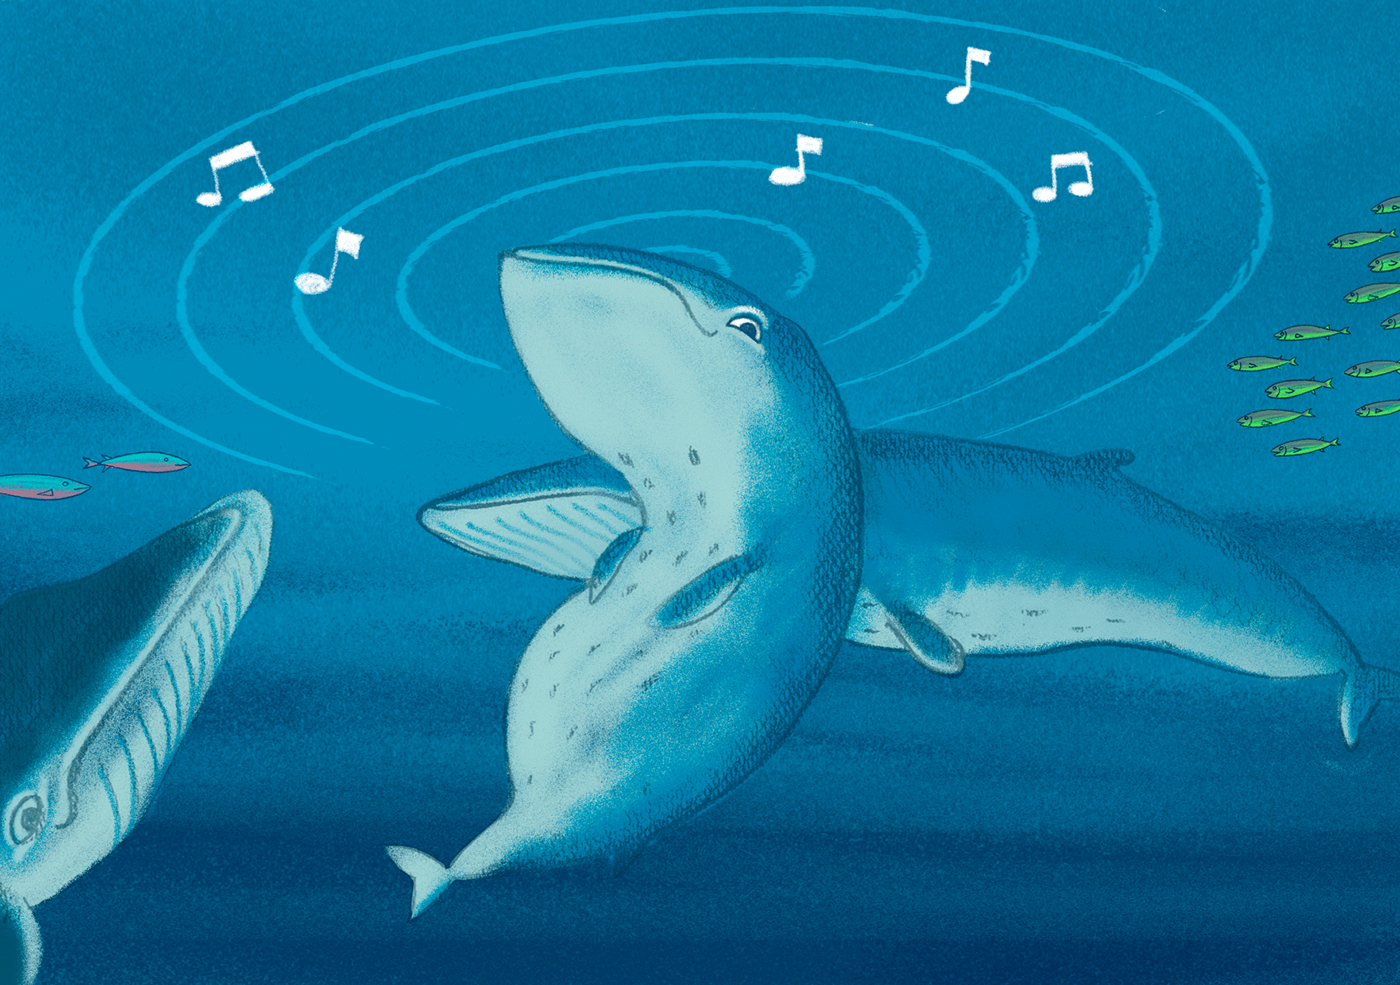 kamishibai seiwhale Whale sea chile isla ballena mother libro ilustrado children book